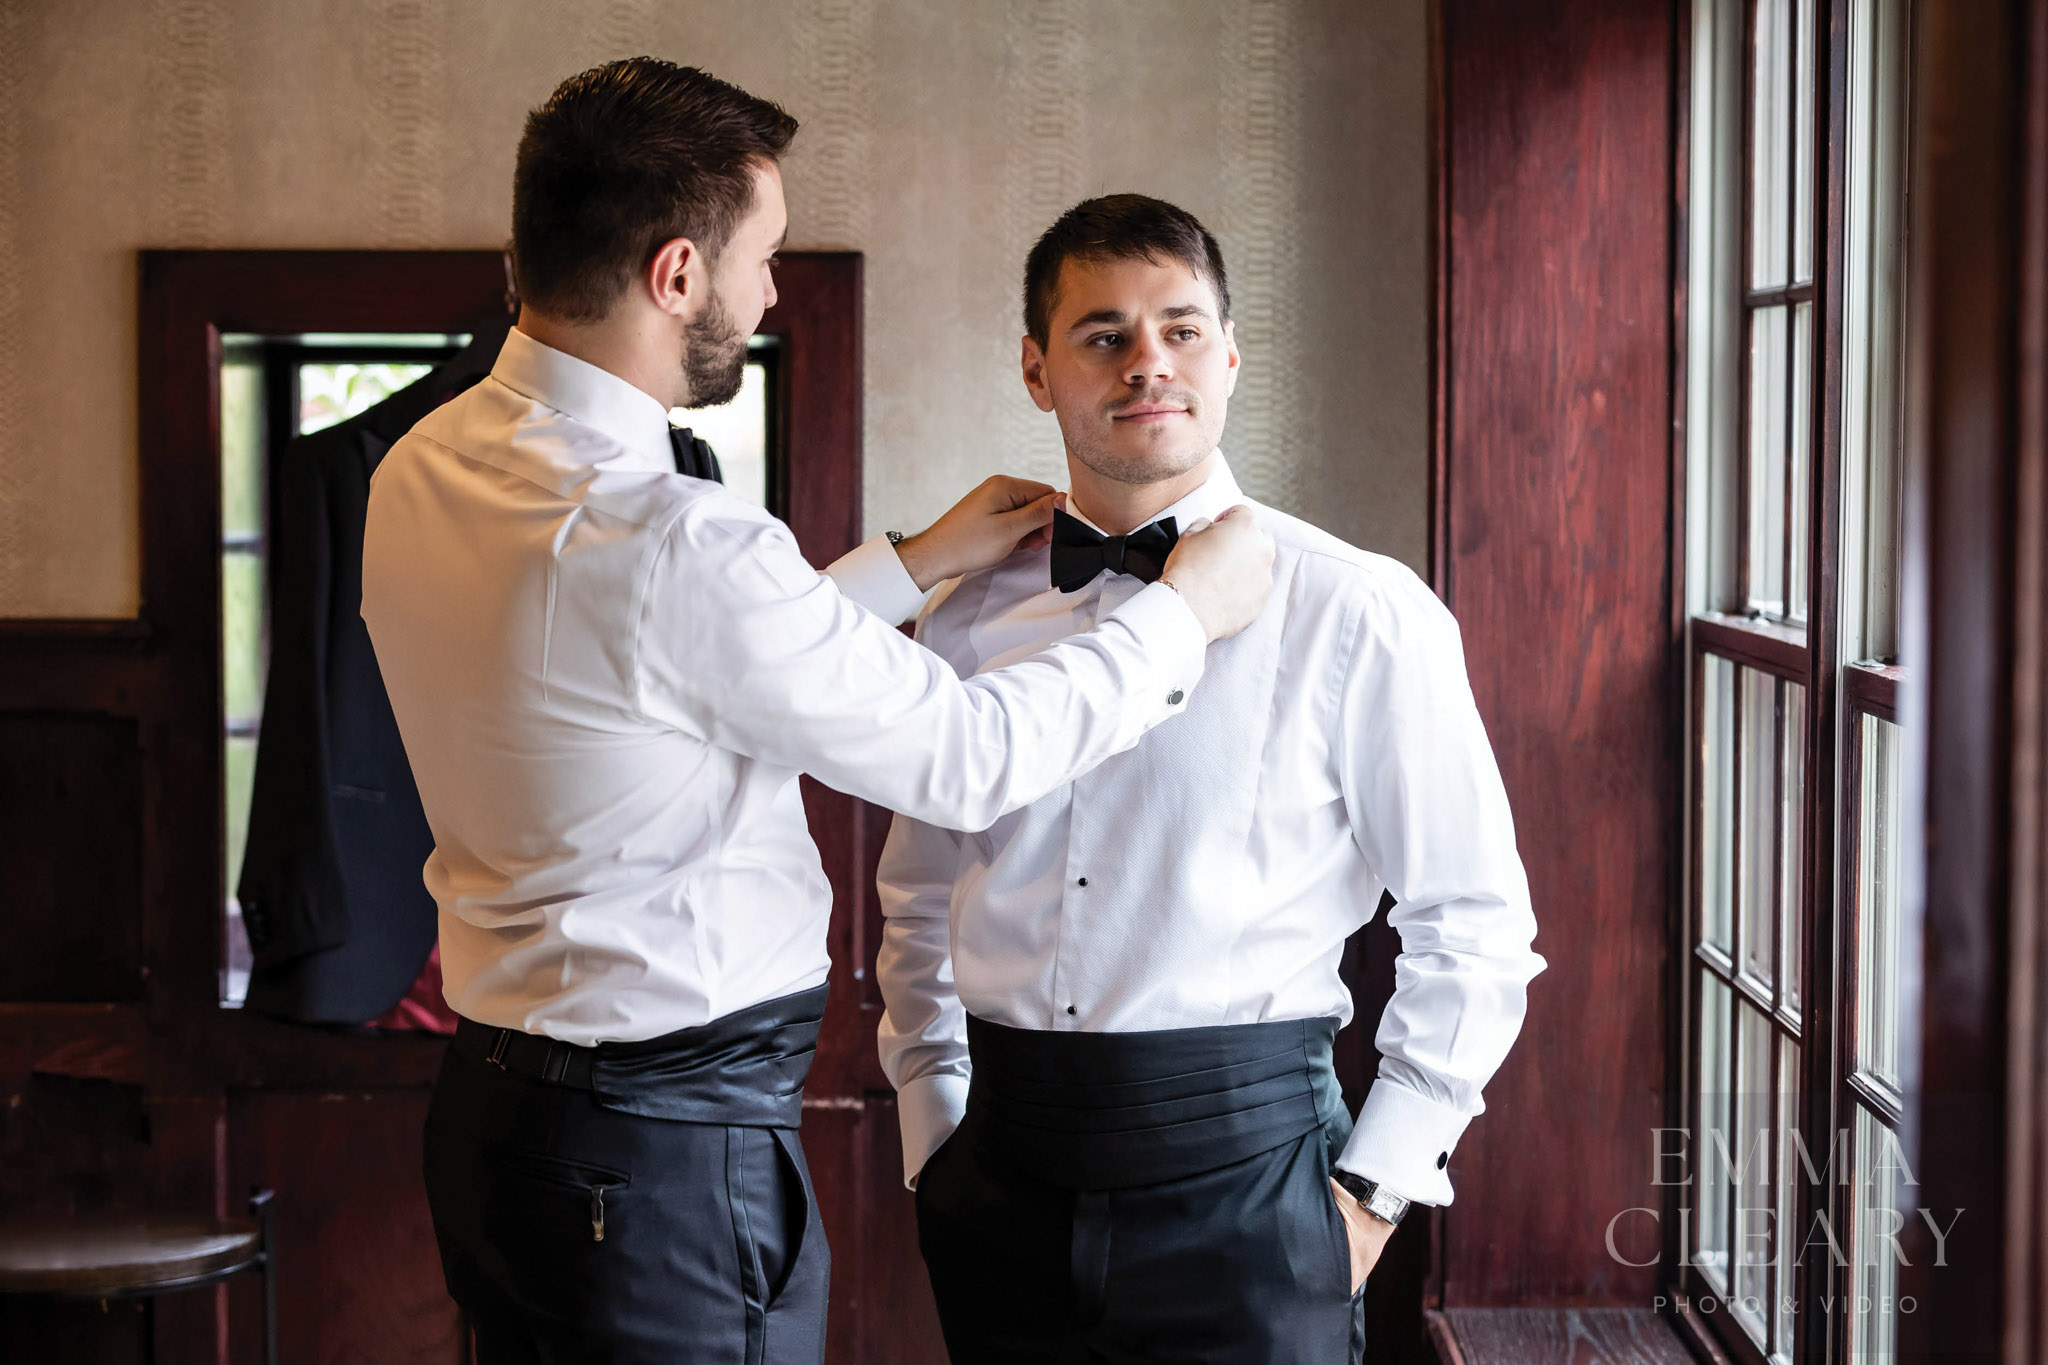 Best man helps the groom